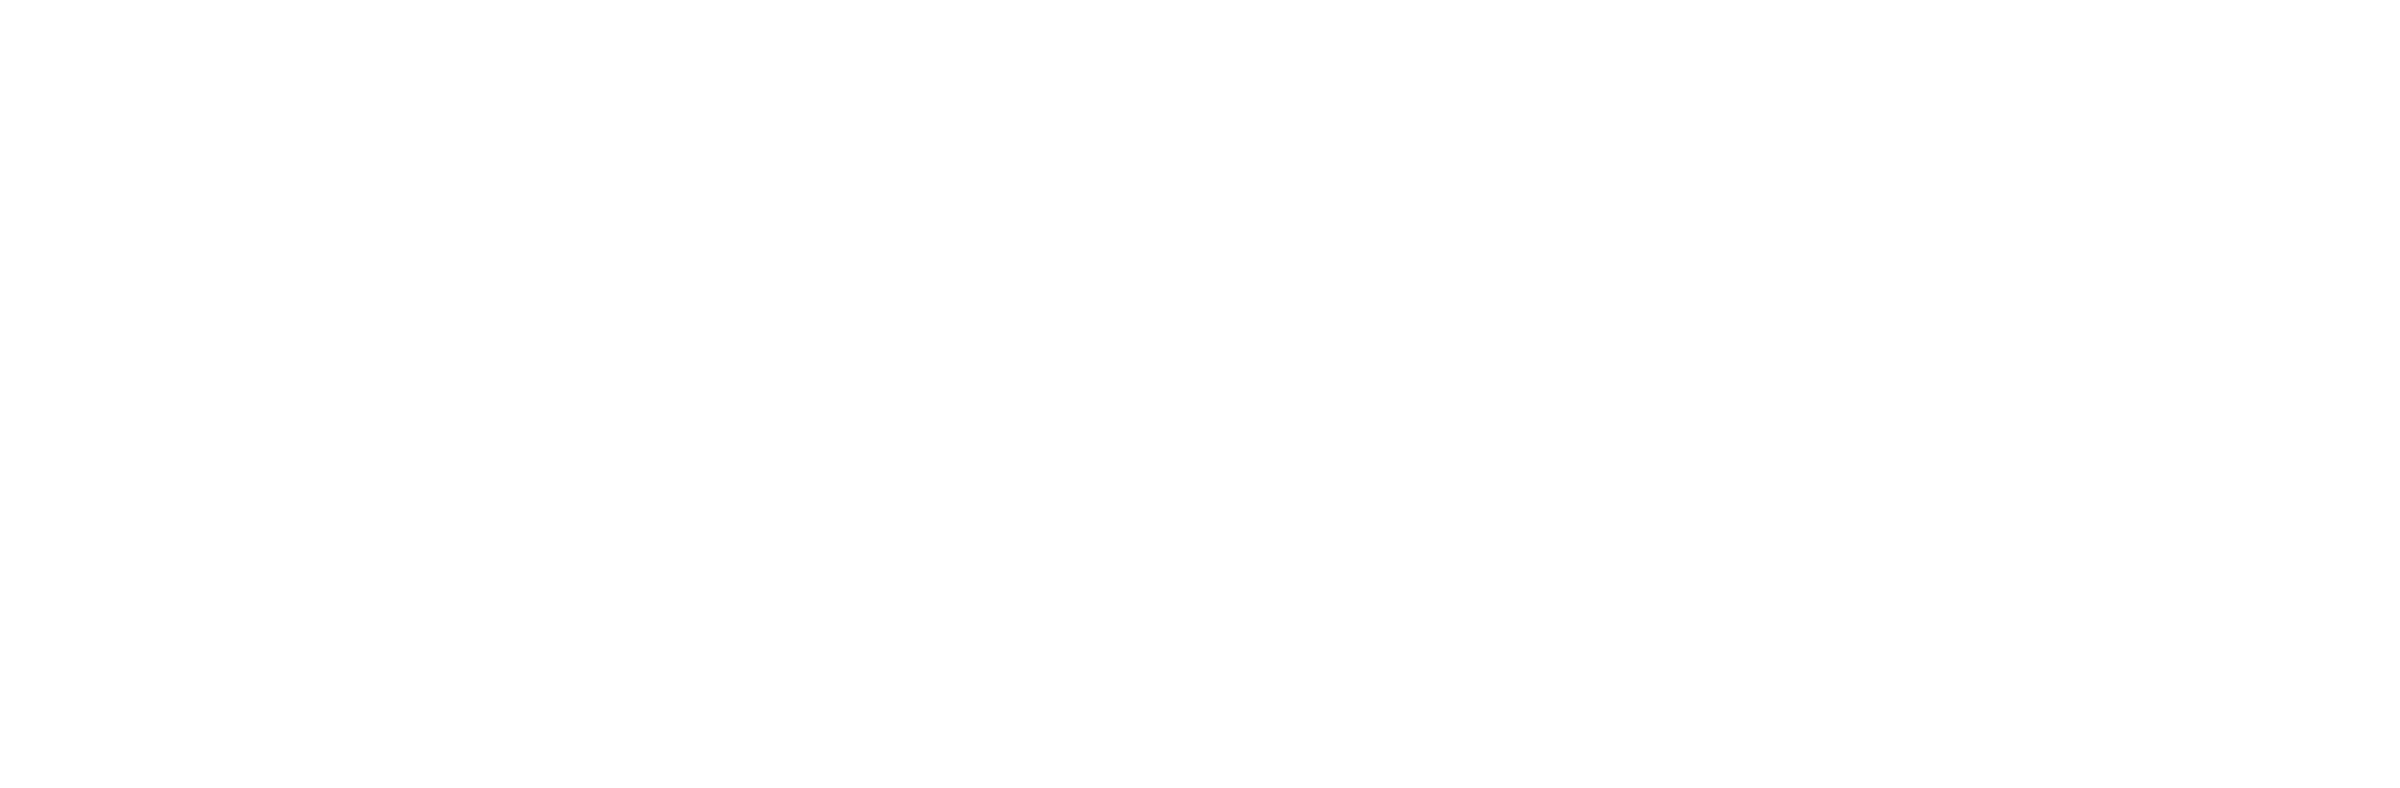 Nathan's Famous Logos_Nathans_White_Logo_Web